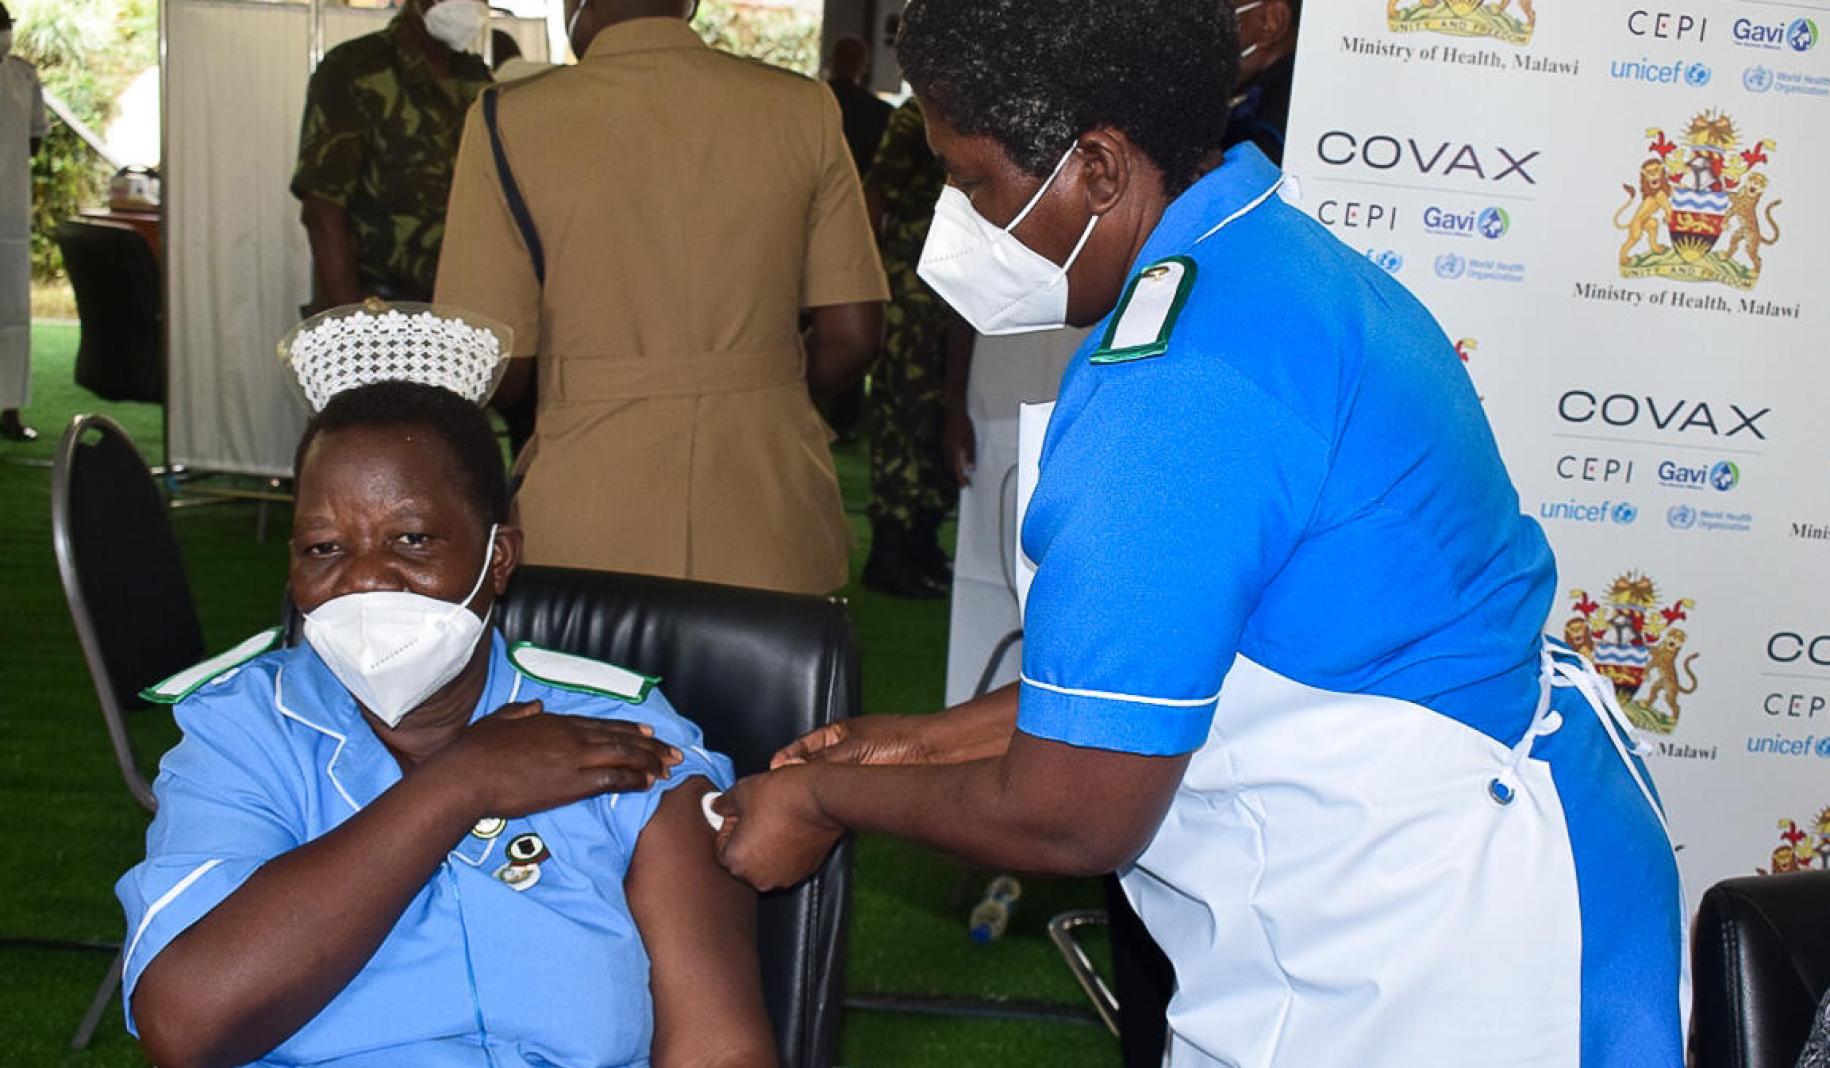 Una profesional de la salud en una locación de vacunación se arremanga el uniforme mientras recibe una vacuna, administrada por su compañera de trabajo.